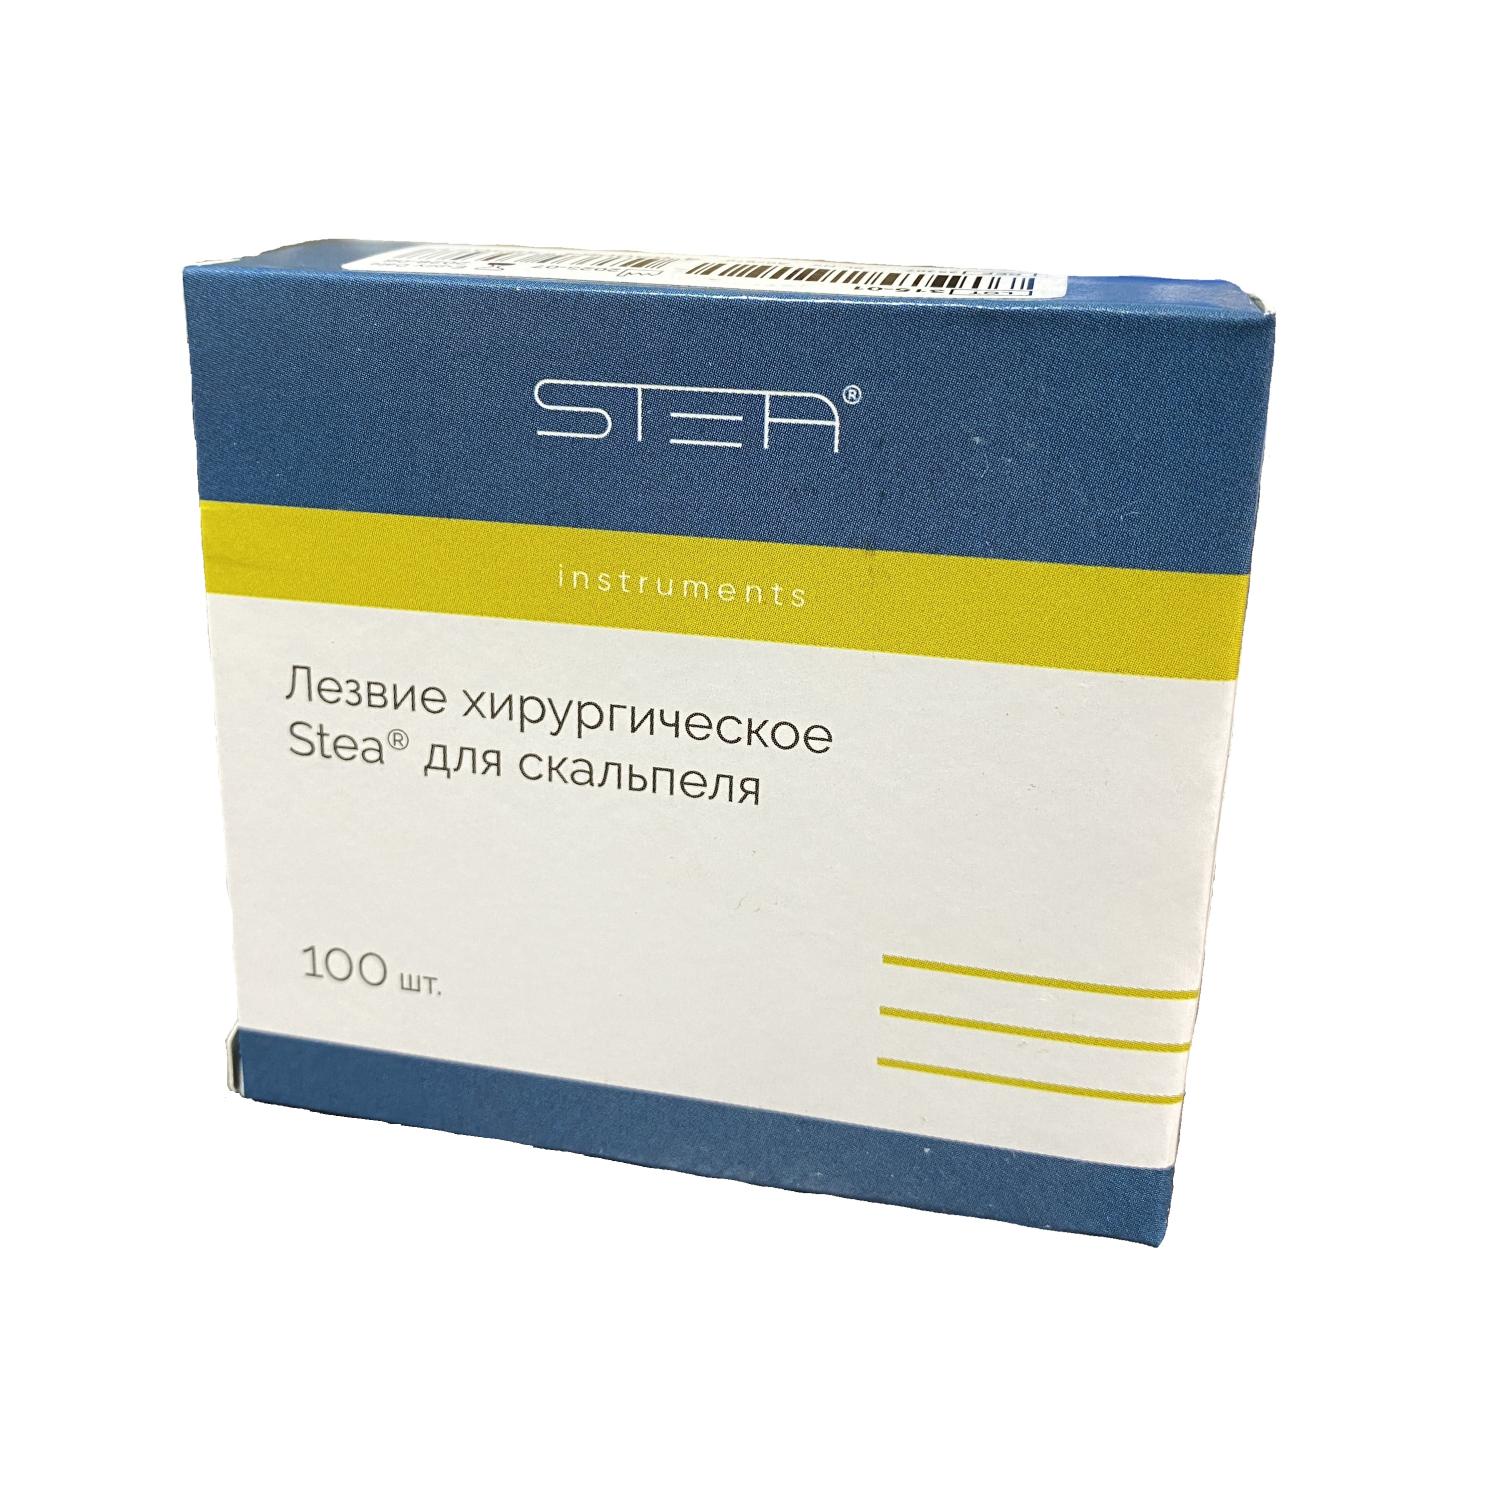 Лезвие хирургическое Stea® для скальпеля № 15C, стерильное, упаковка 100 шт. 35309